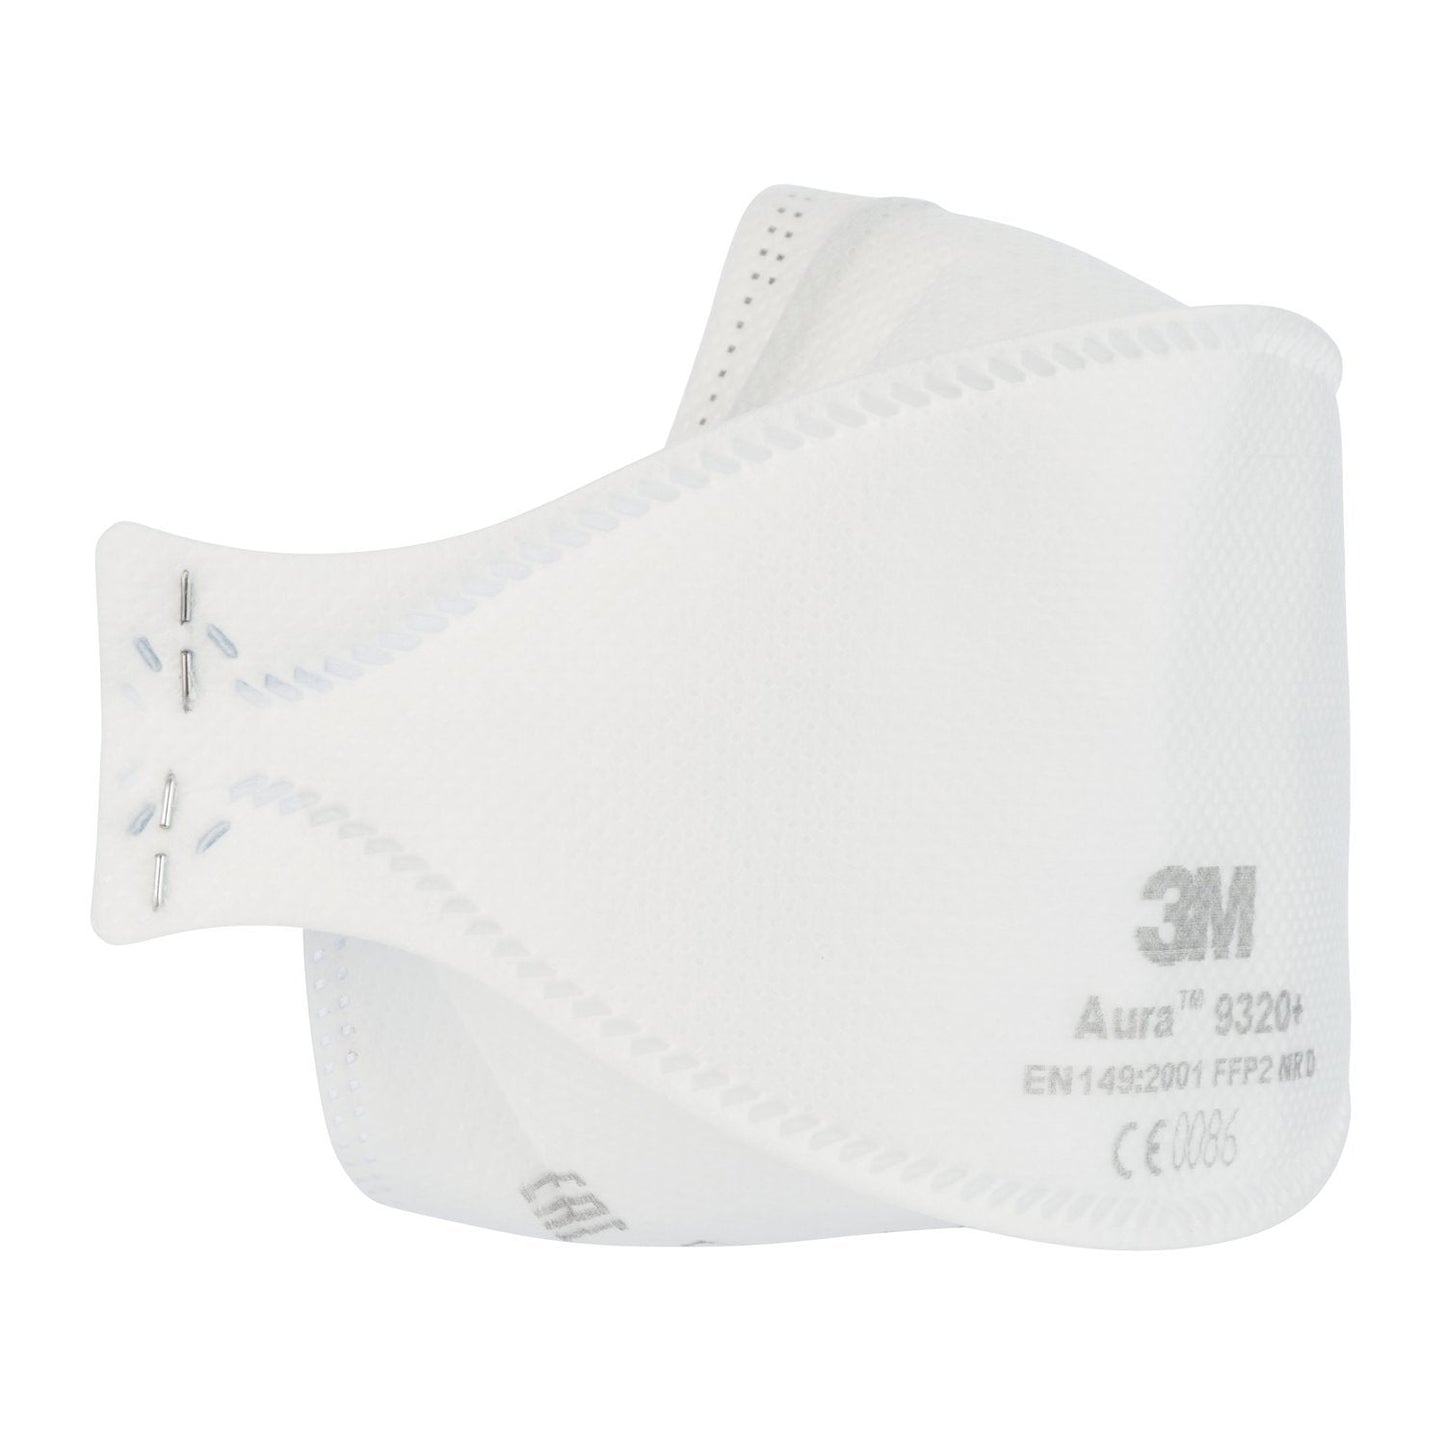 3M Flat Fold Respirator Mask (9320+)